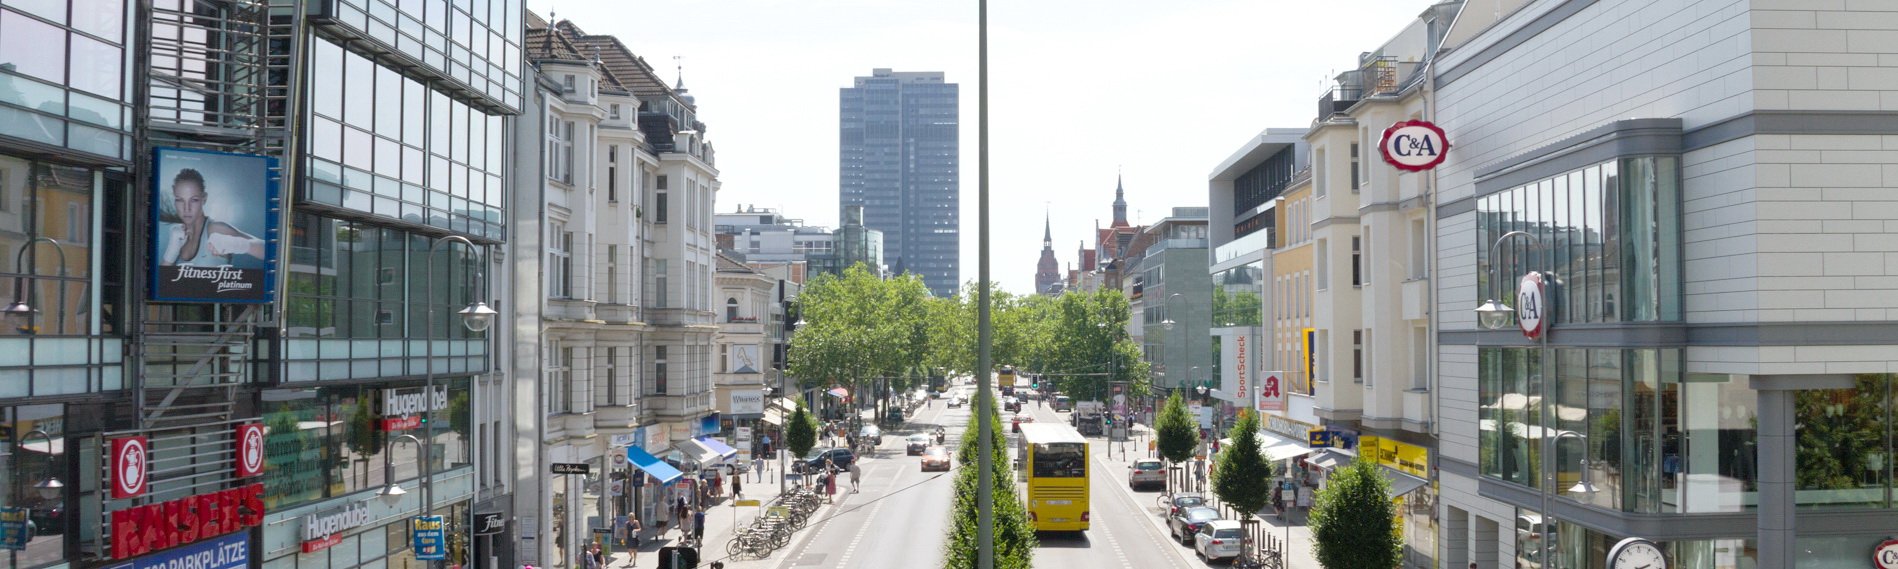 Berliini yksityiskohtaisesti – Berliini-Steglitz yhdellä silmäyksellä